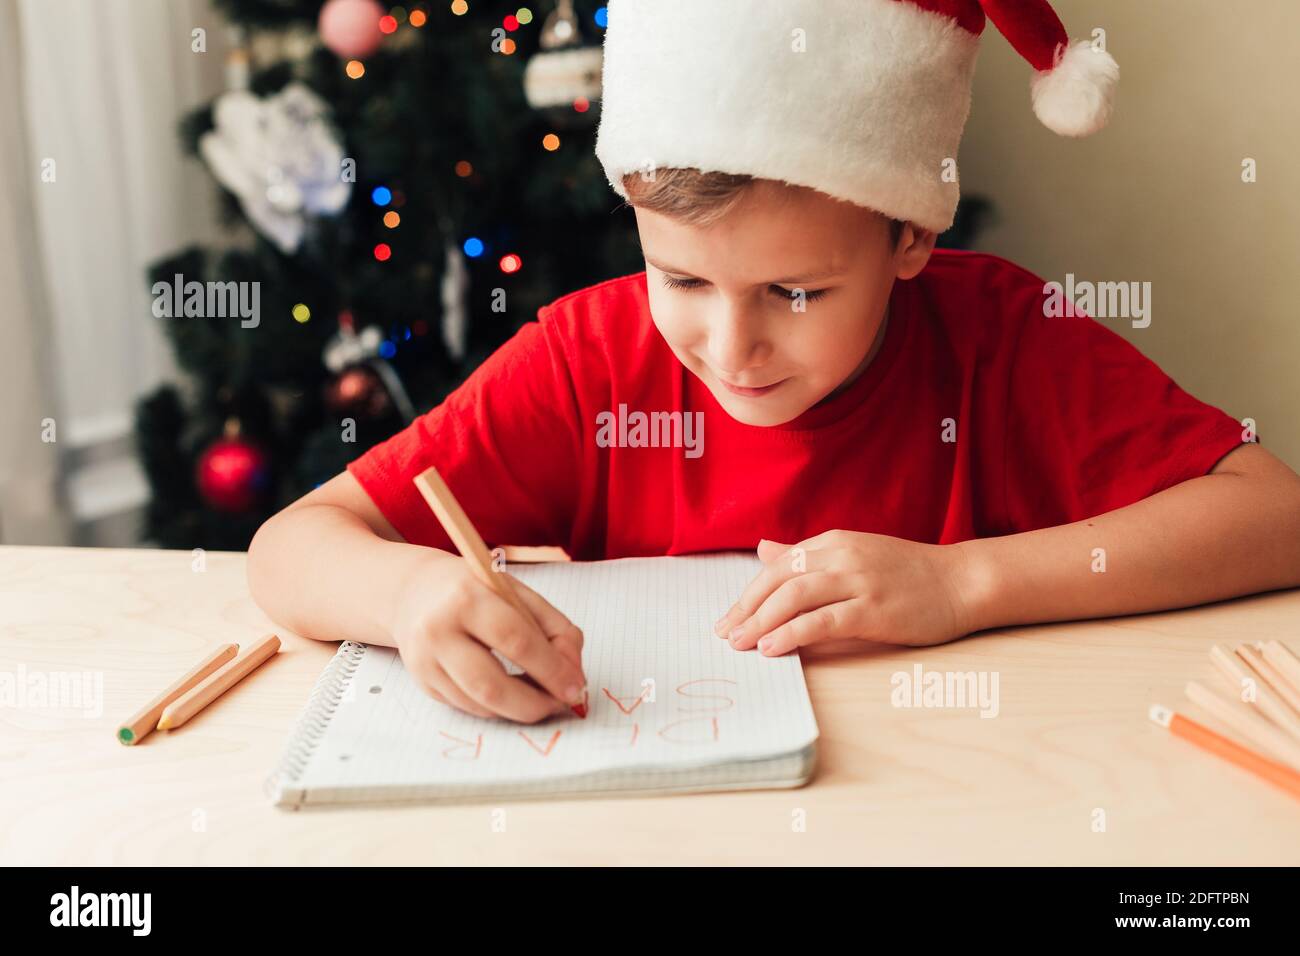 Lächelndes Kind Junge trägt roten Hut schreiben Brief an den Weihnachtsmann sitzen am Schreibtisch, Weihnachtsbaum auf dem Hintergrund, Haus innen Stockfoto